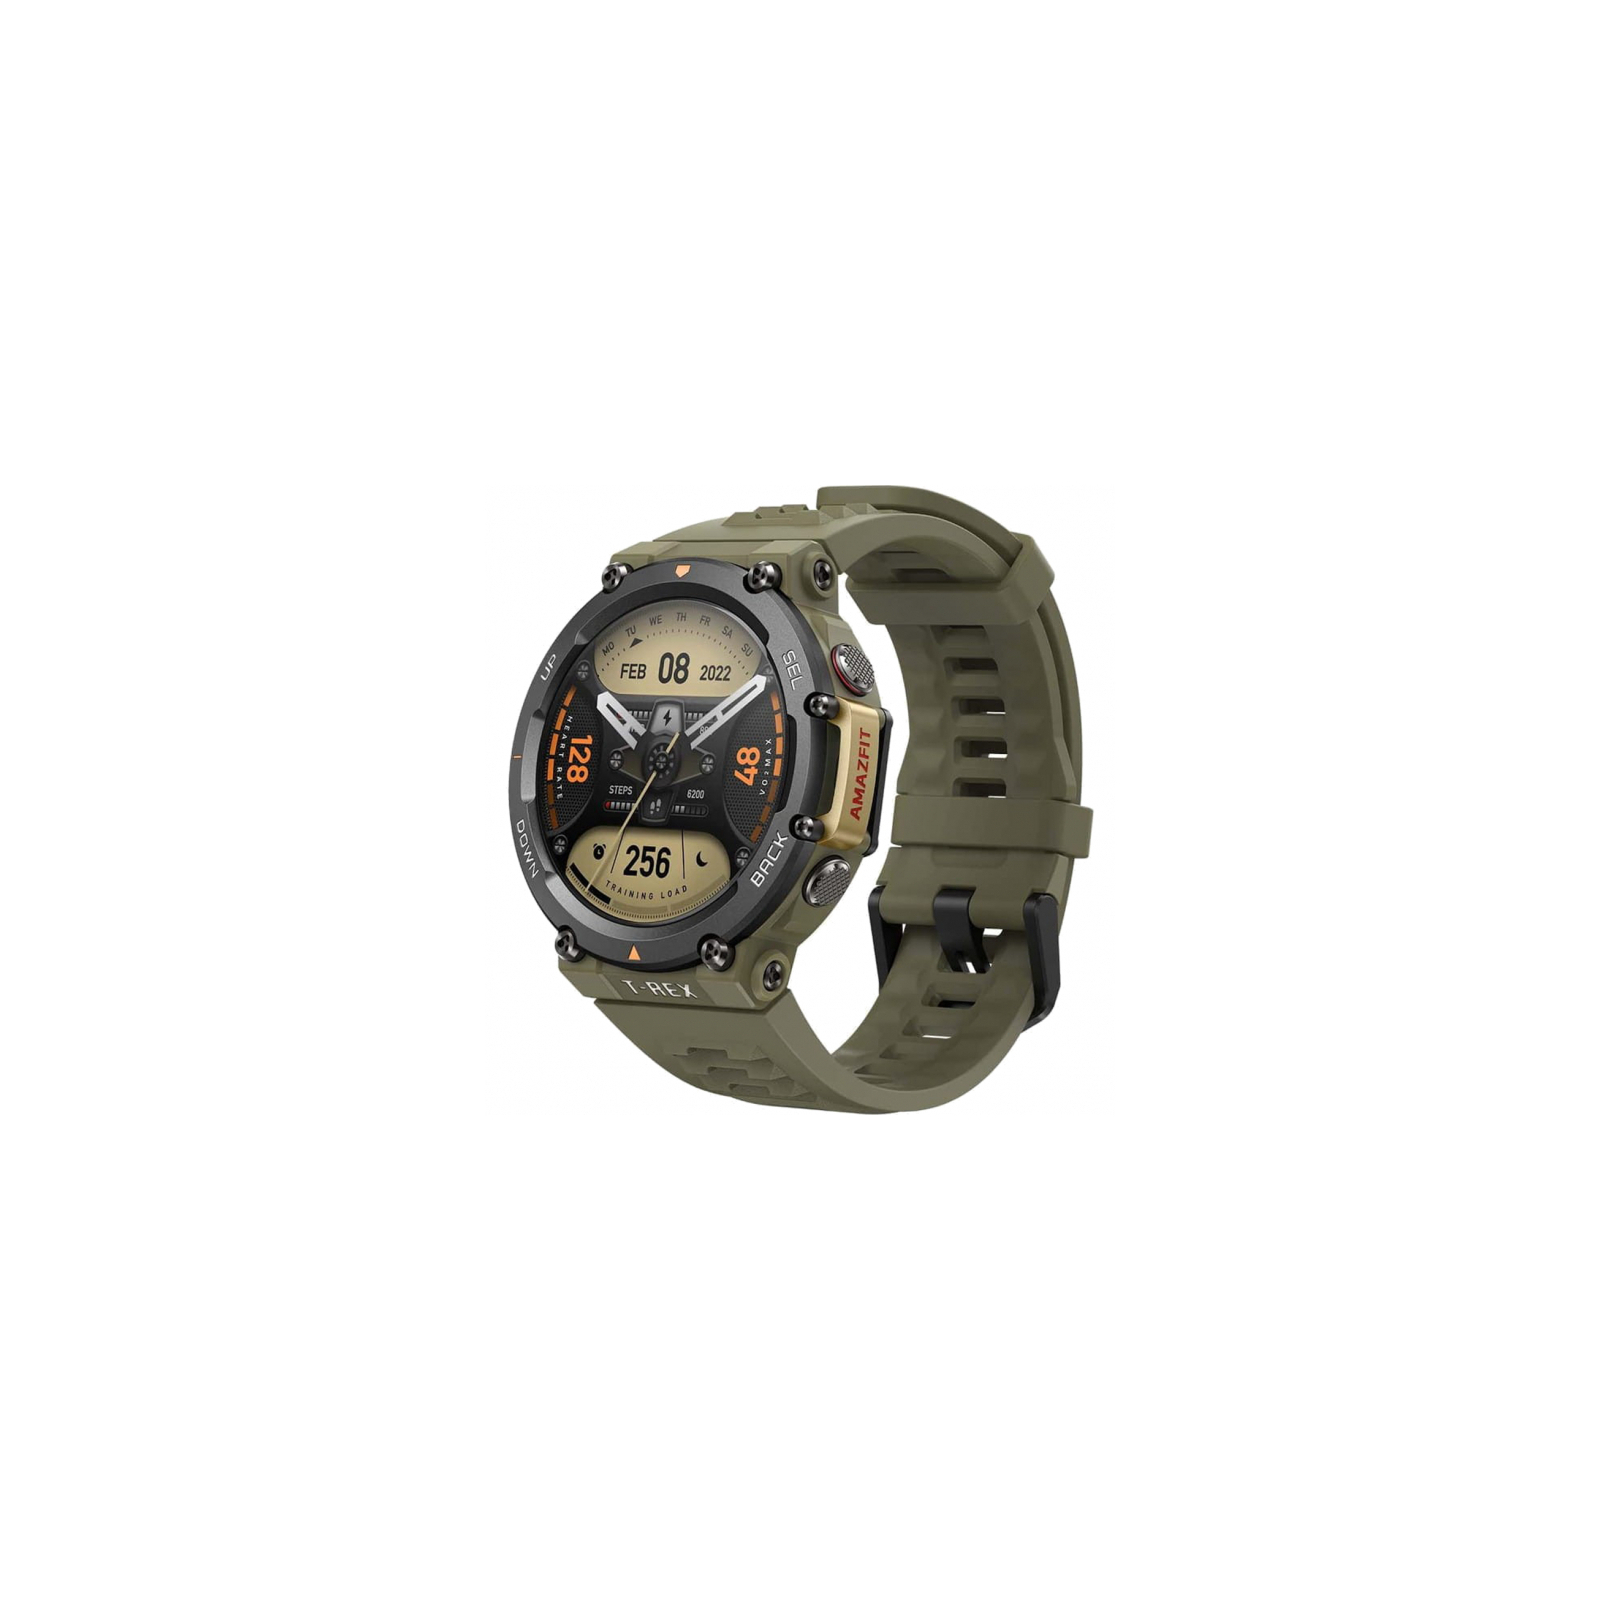 Смарт-часы Amazfit T-REX 2 Ember Black (955551)